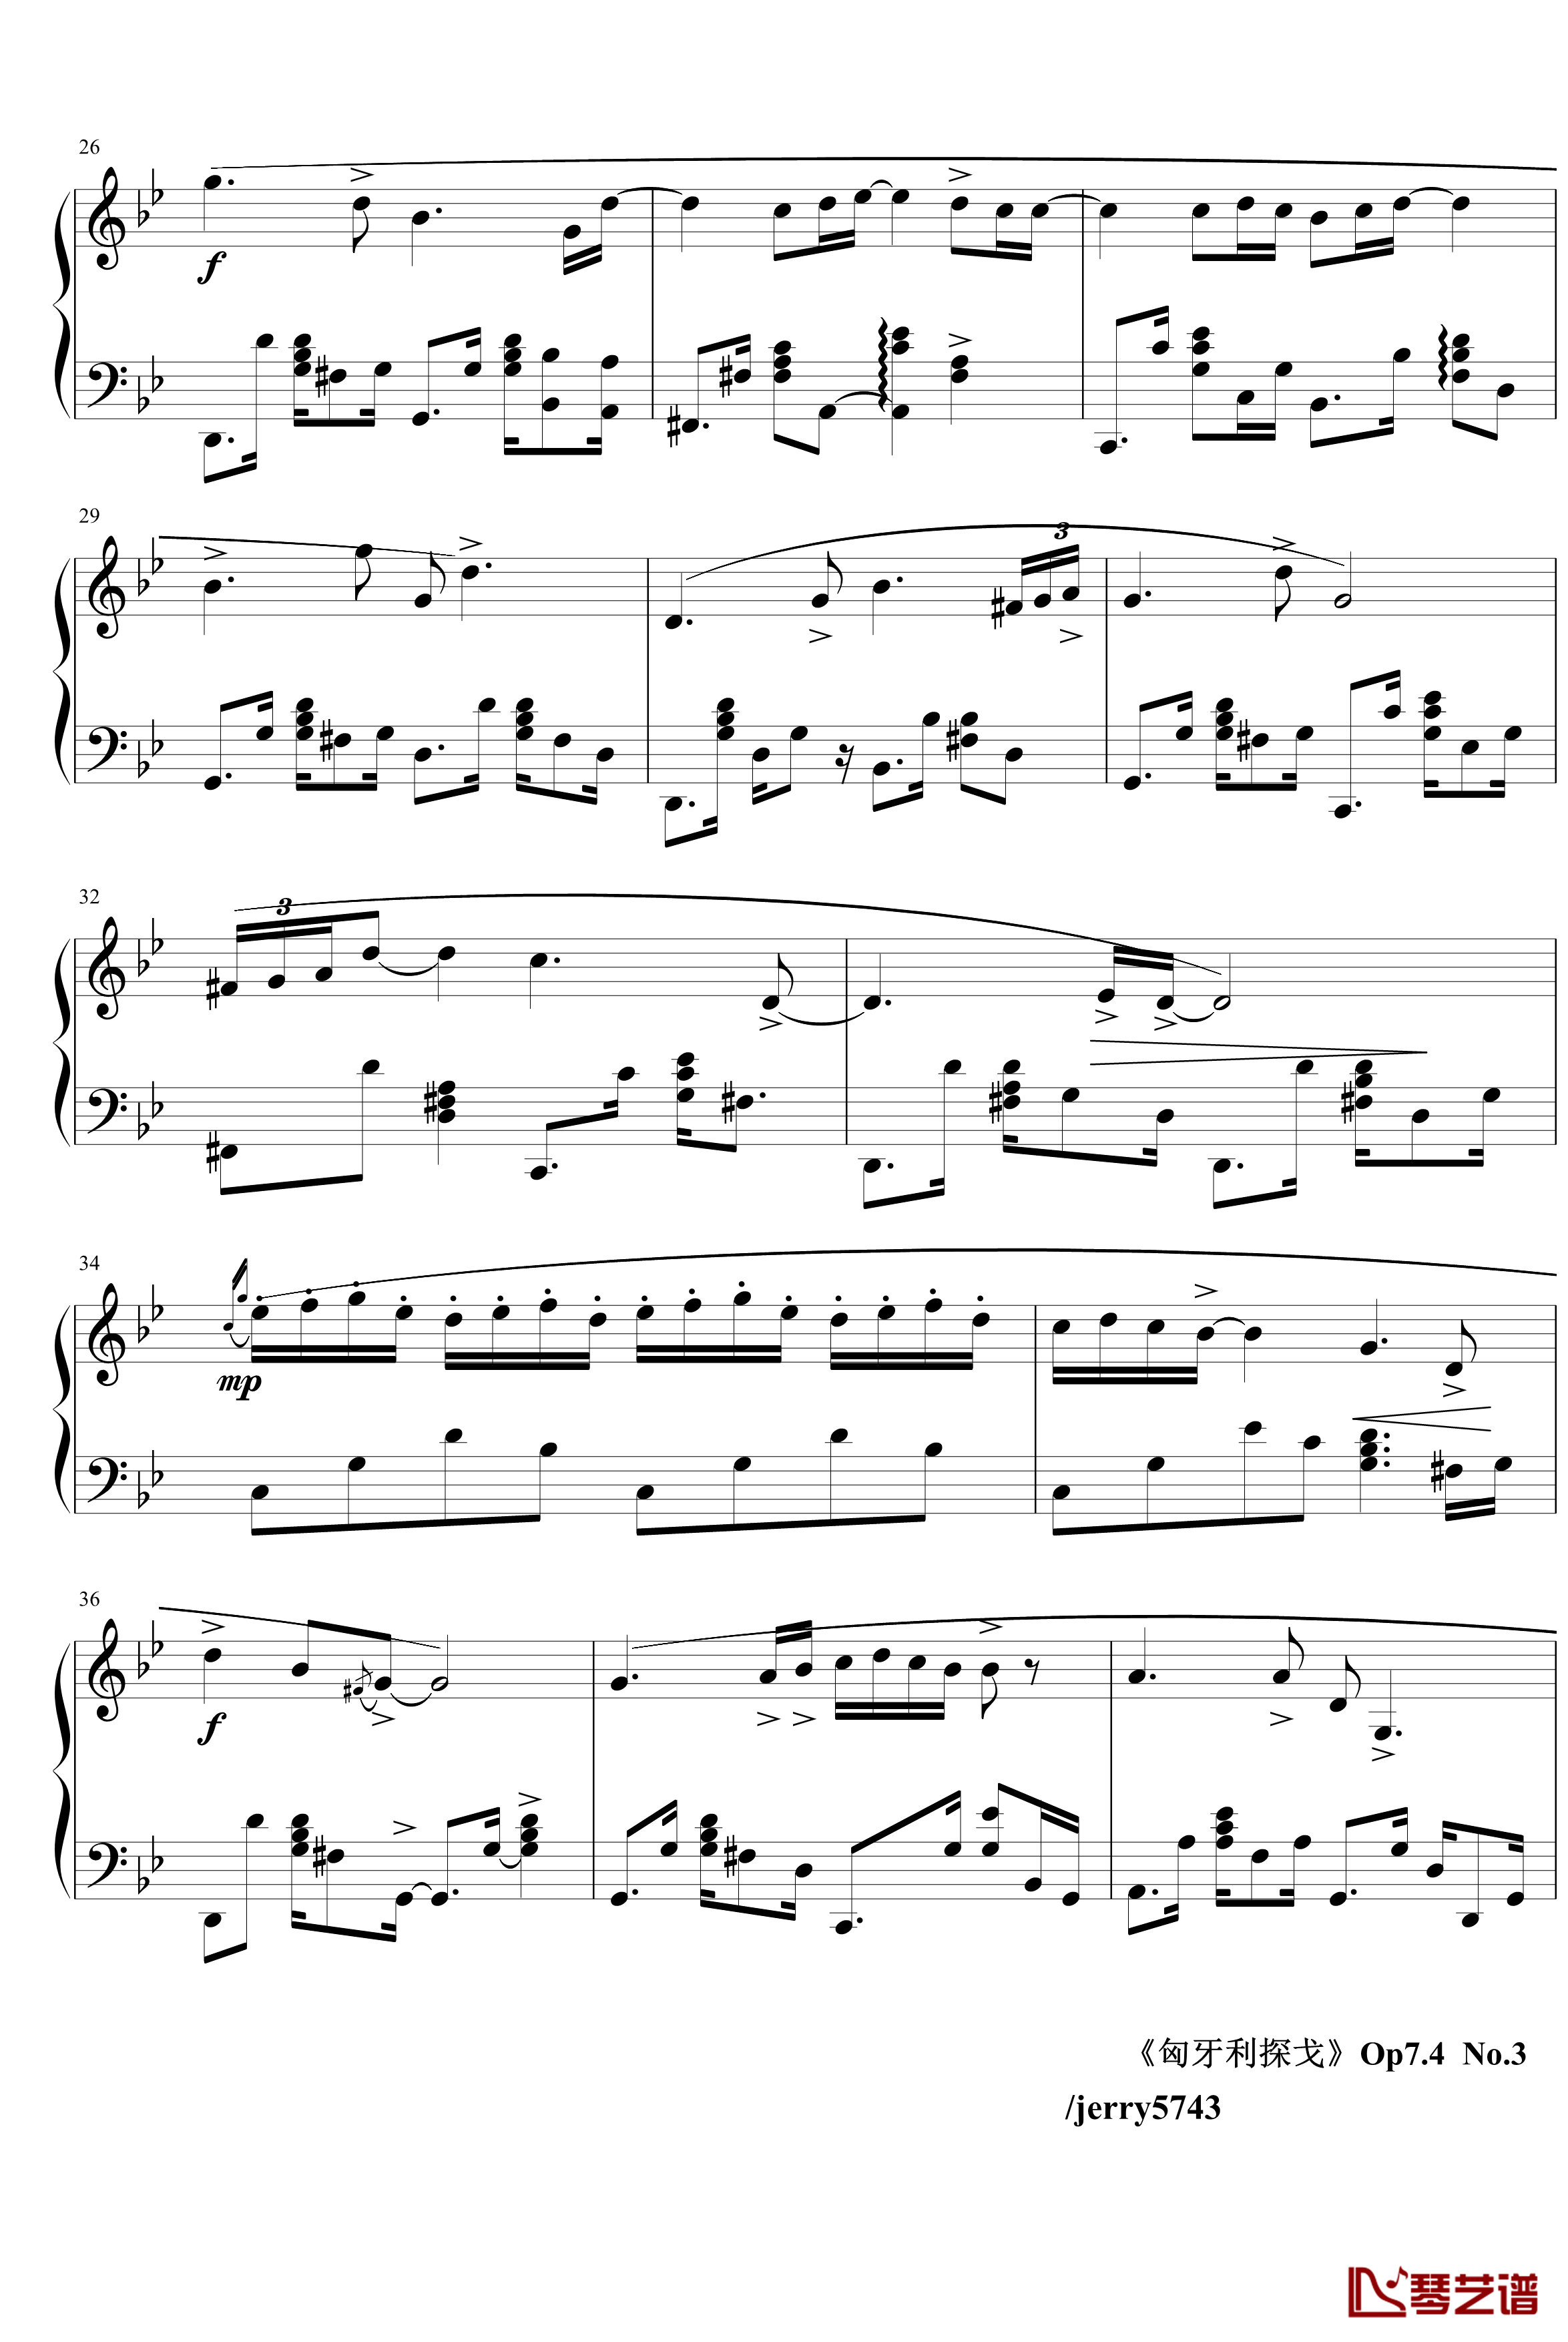 匈牙利探戈Op7.4钢琴谱-异国风情-jerry57433